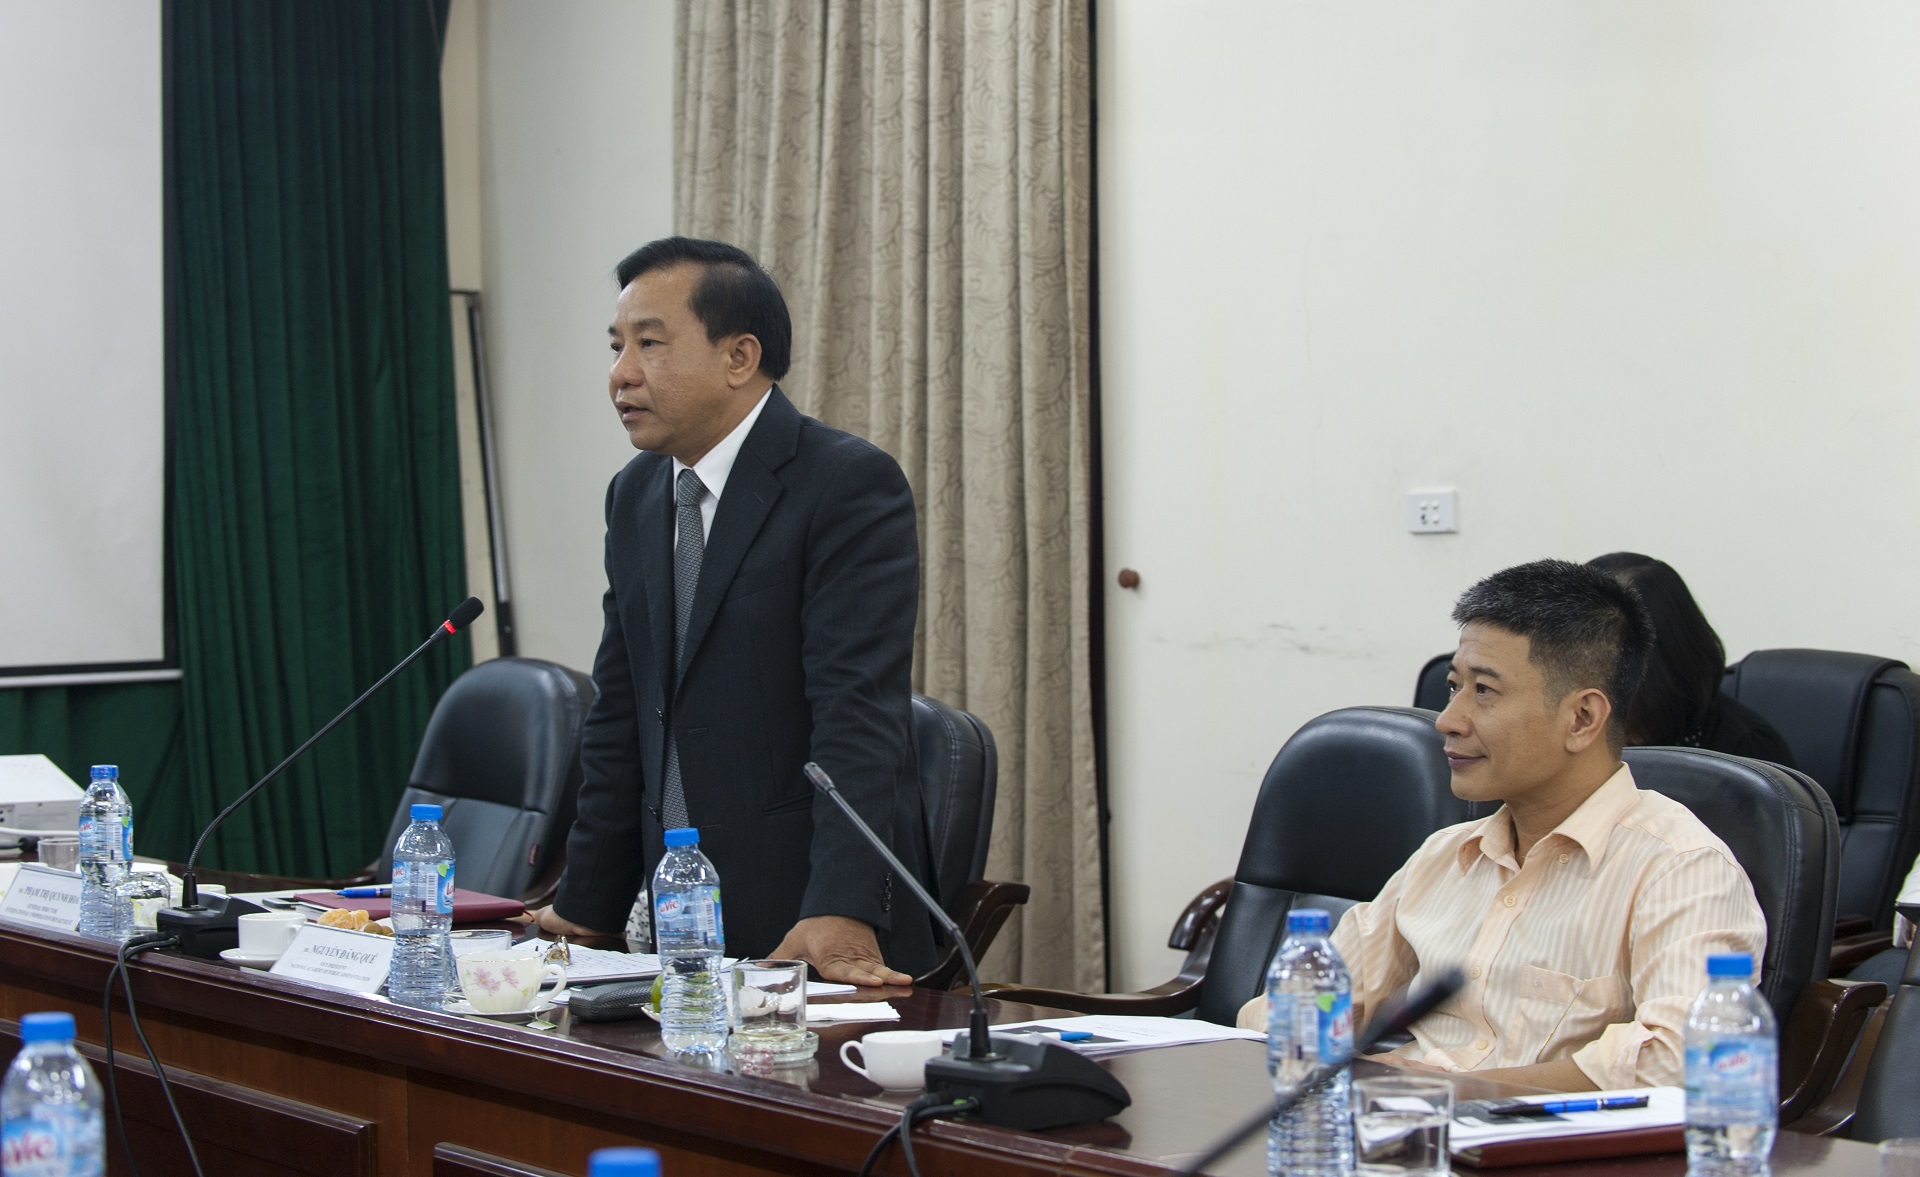 TS. Nguyễn Đăng Quế, Phó Giám đốc Học viện Hành chính Quốc gia trao đổi trong buổi tọa đàm